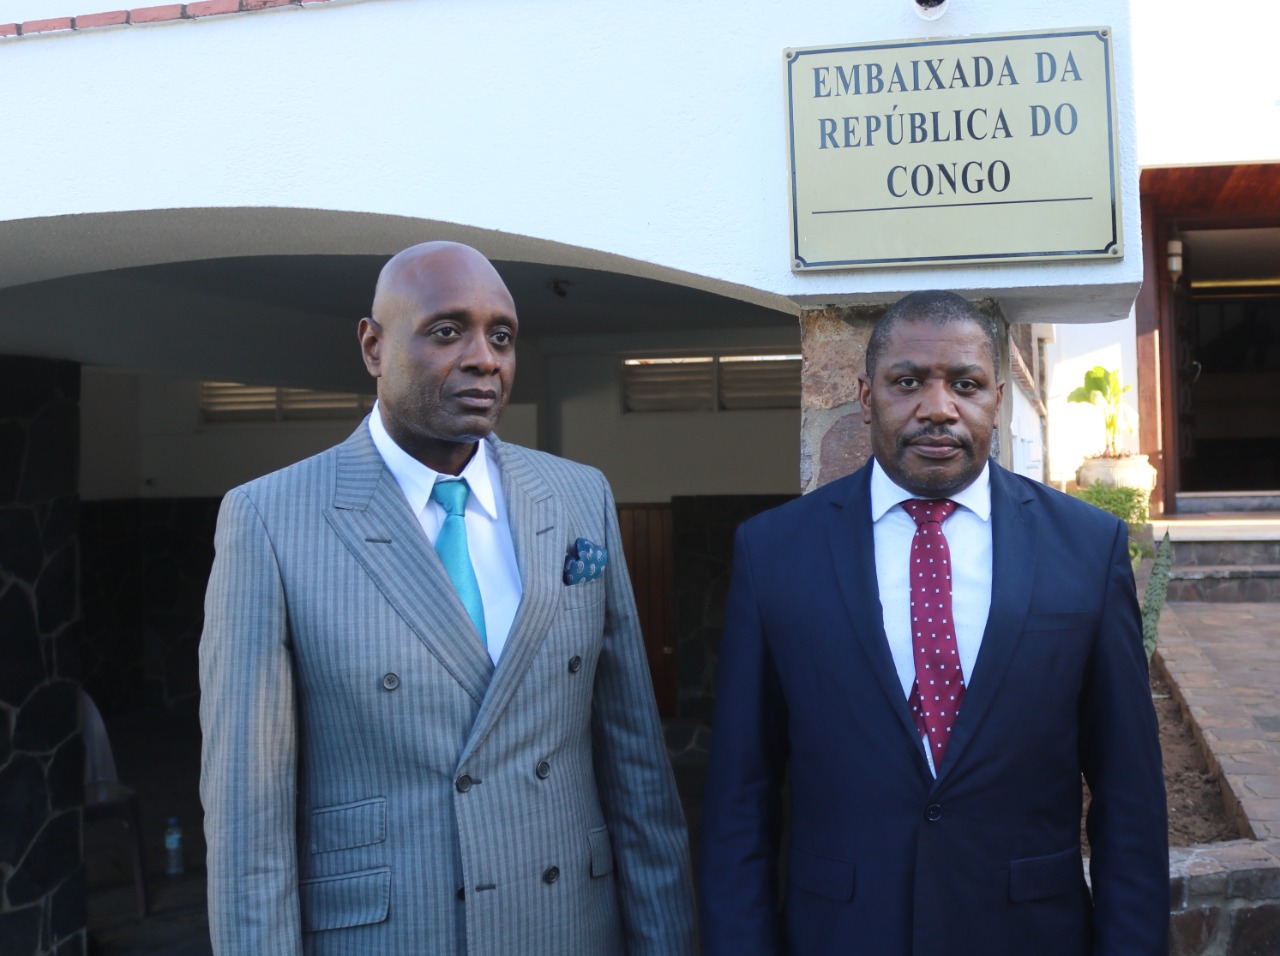 No âmbito da Cooperação Bilateral: VICENTE JOAQUIM VISITA EMBAIXADA DA REPÚBLICA DO CONGO